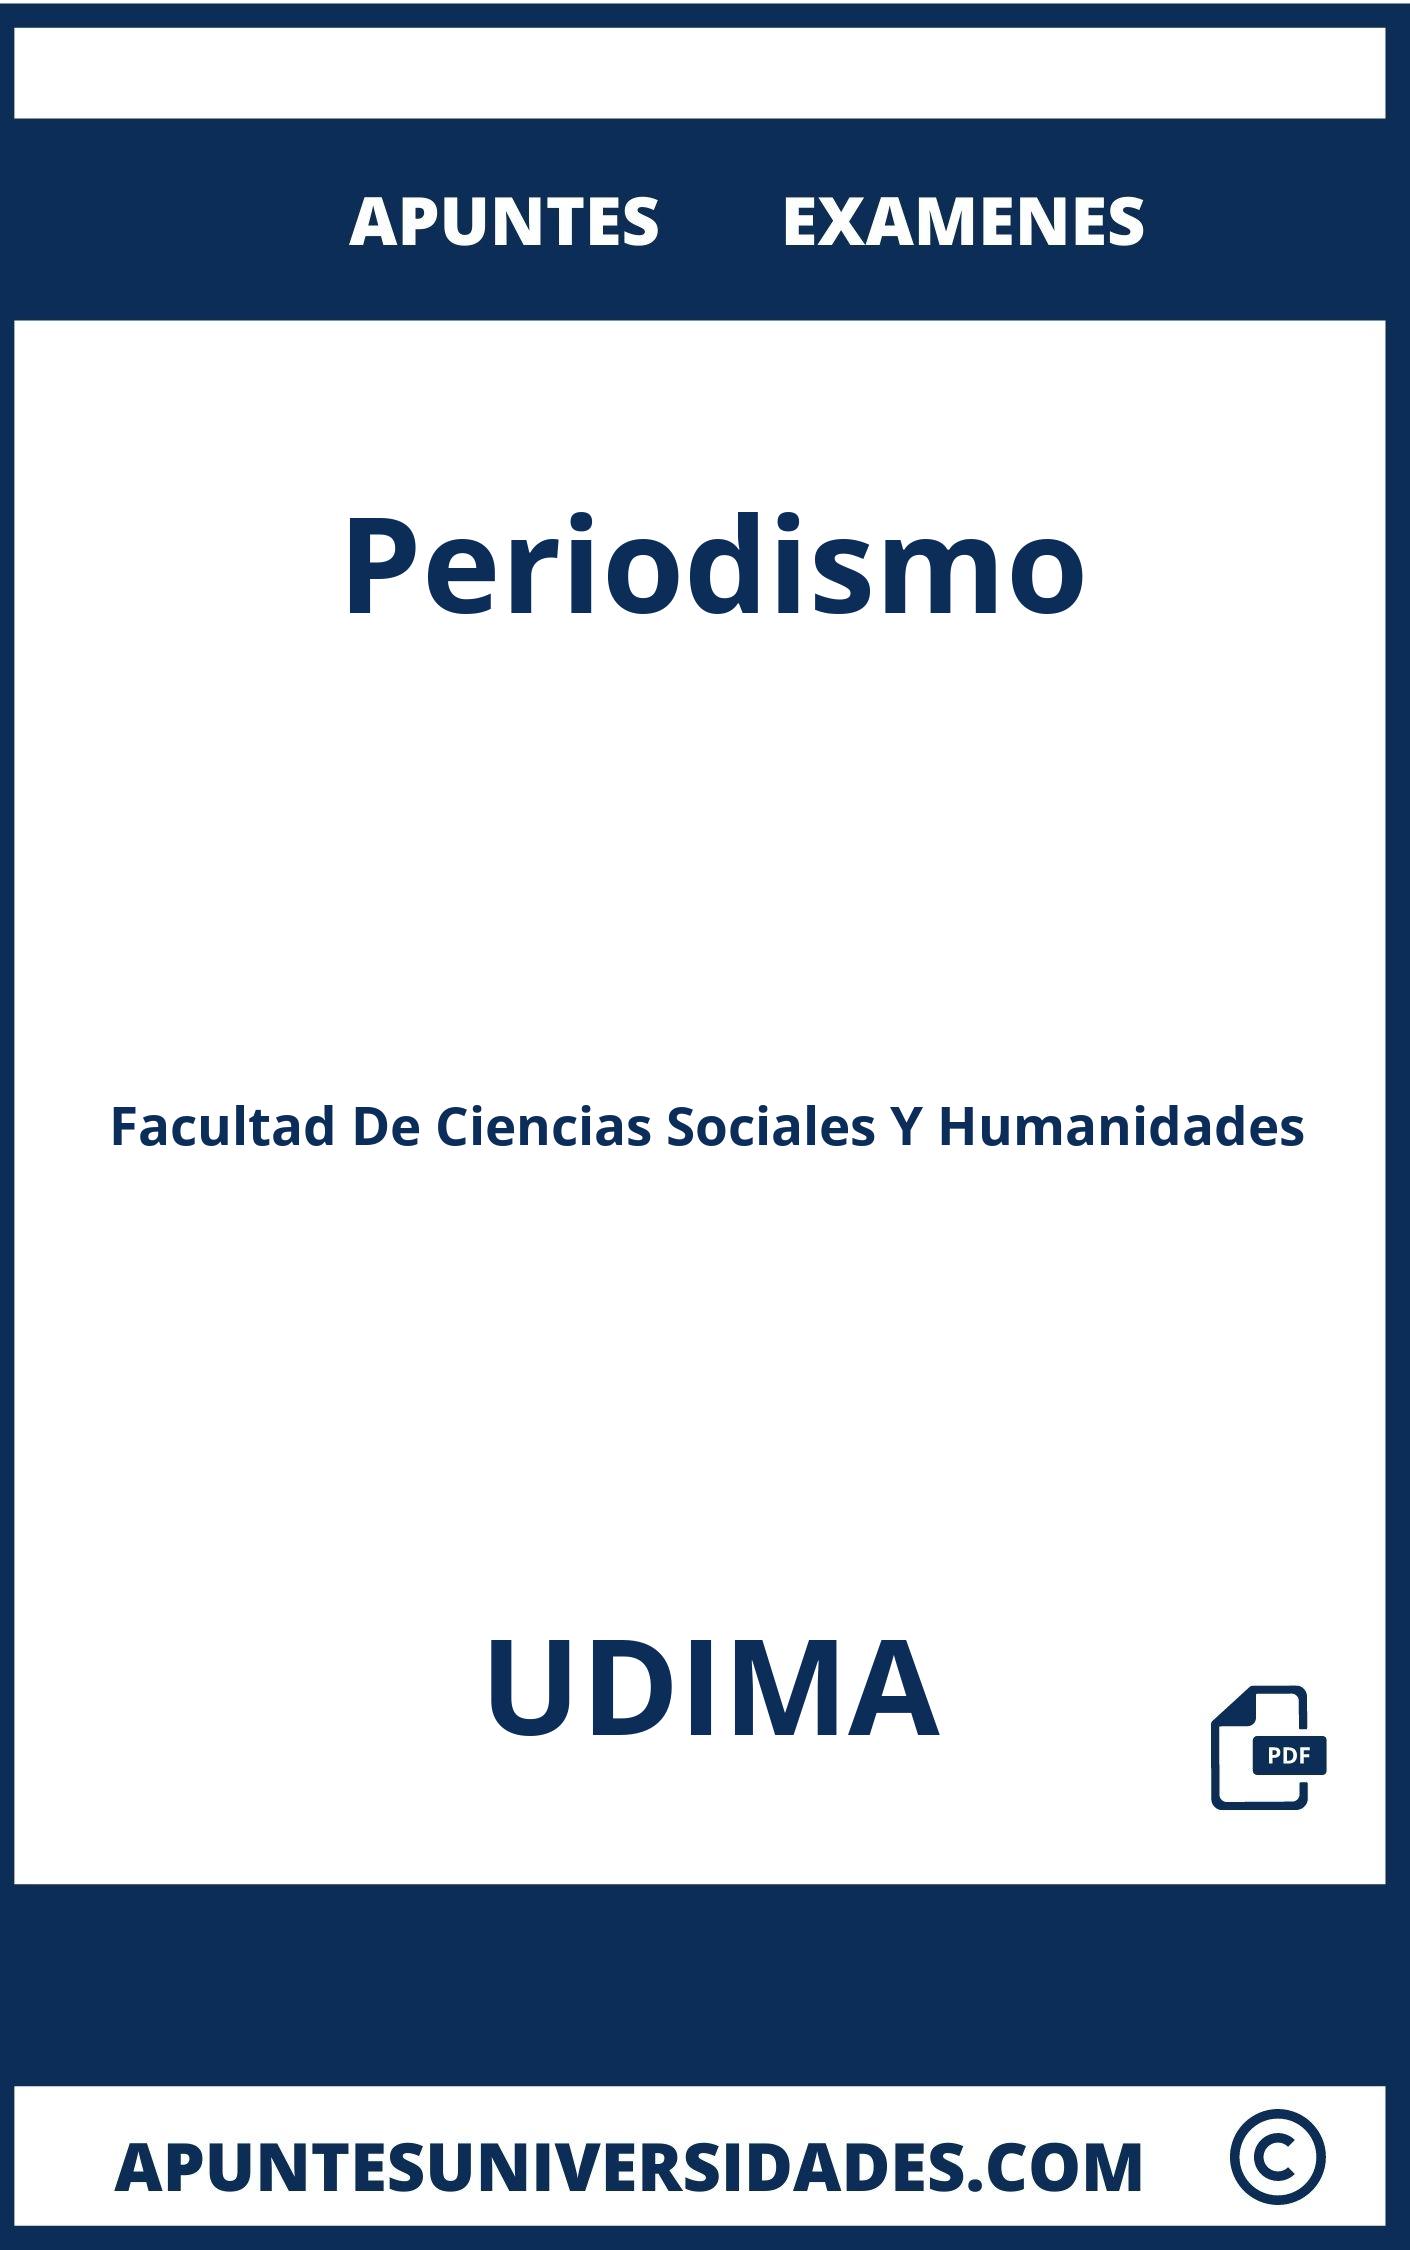 Examenes y Apuntes de Periodismo UDIMA